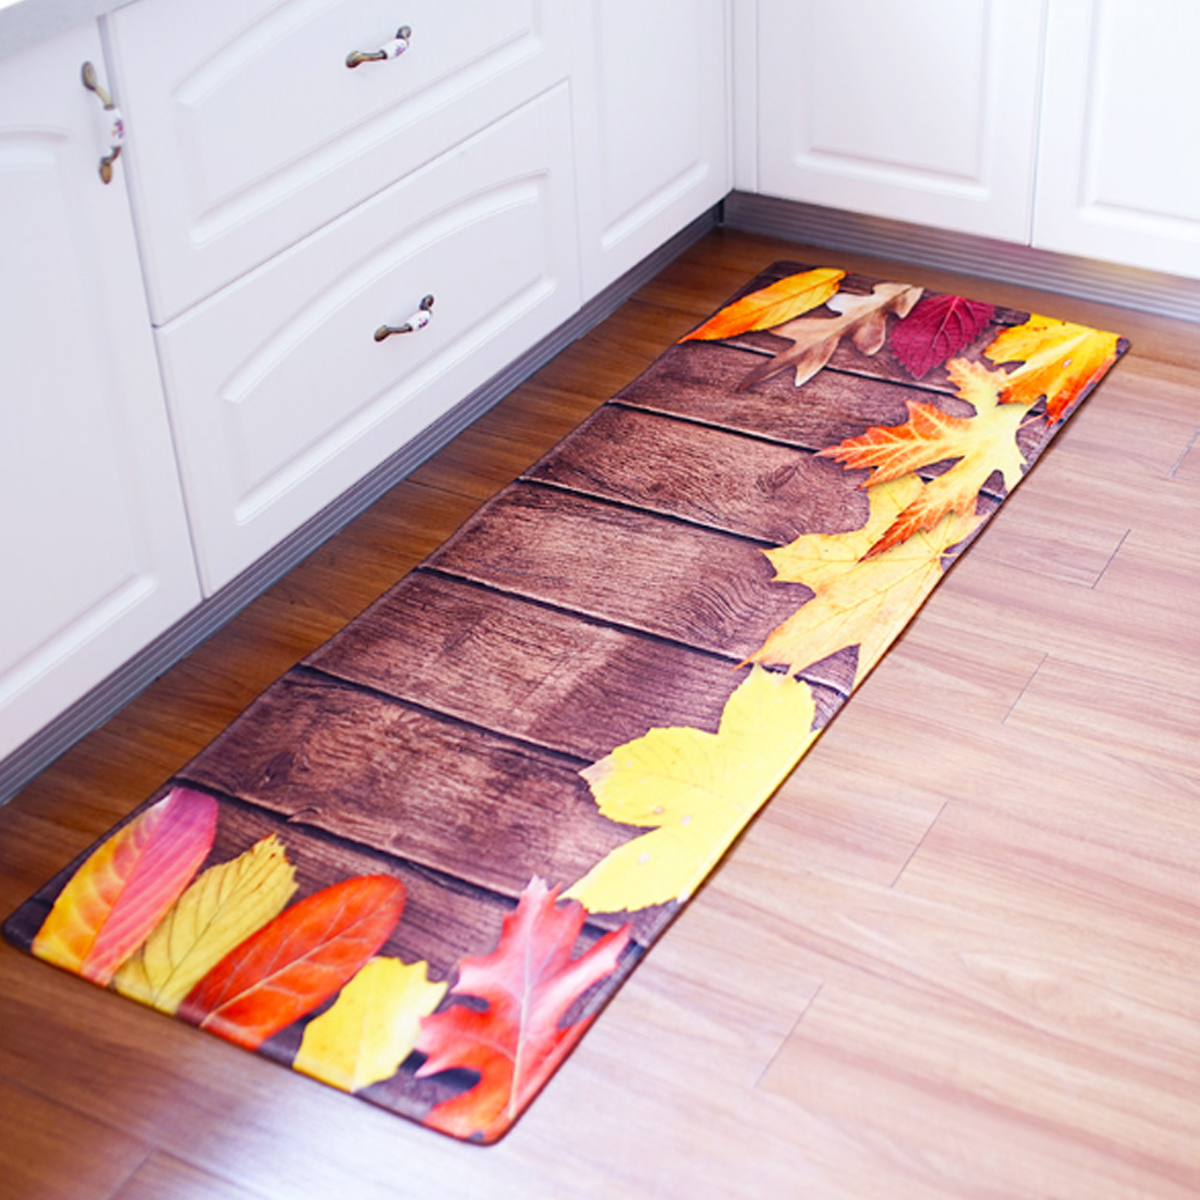 

180см нескользящей домашней кухни спальня коврик напольный коврик дверь фланель ковер моющийся